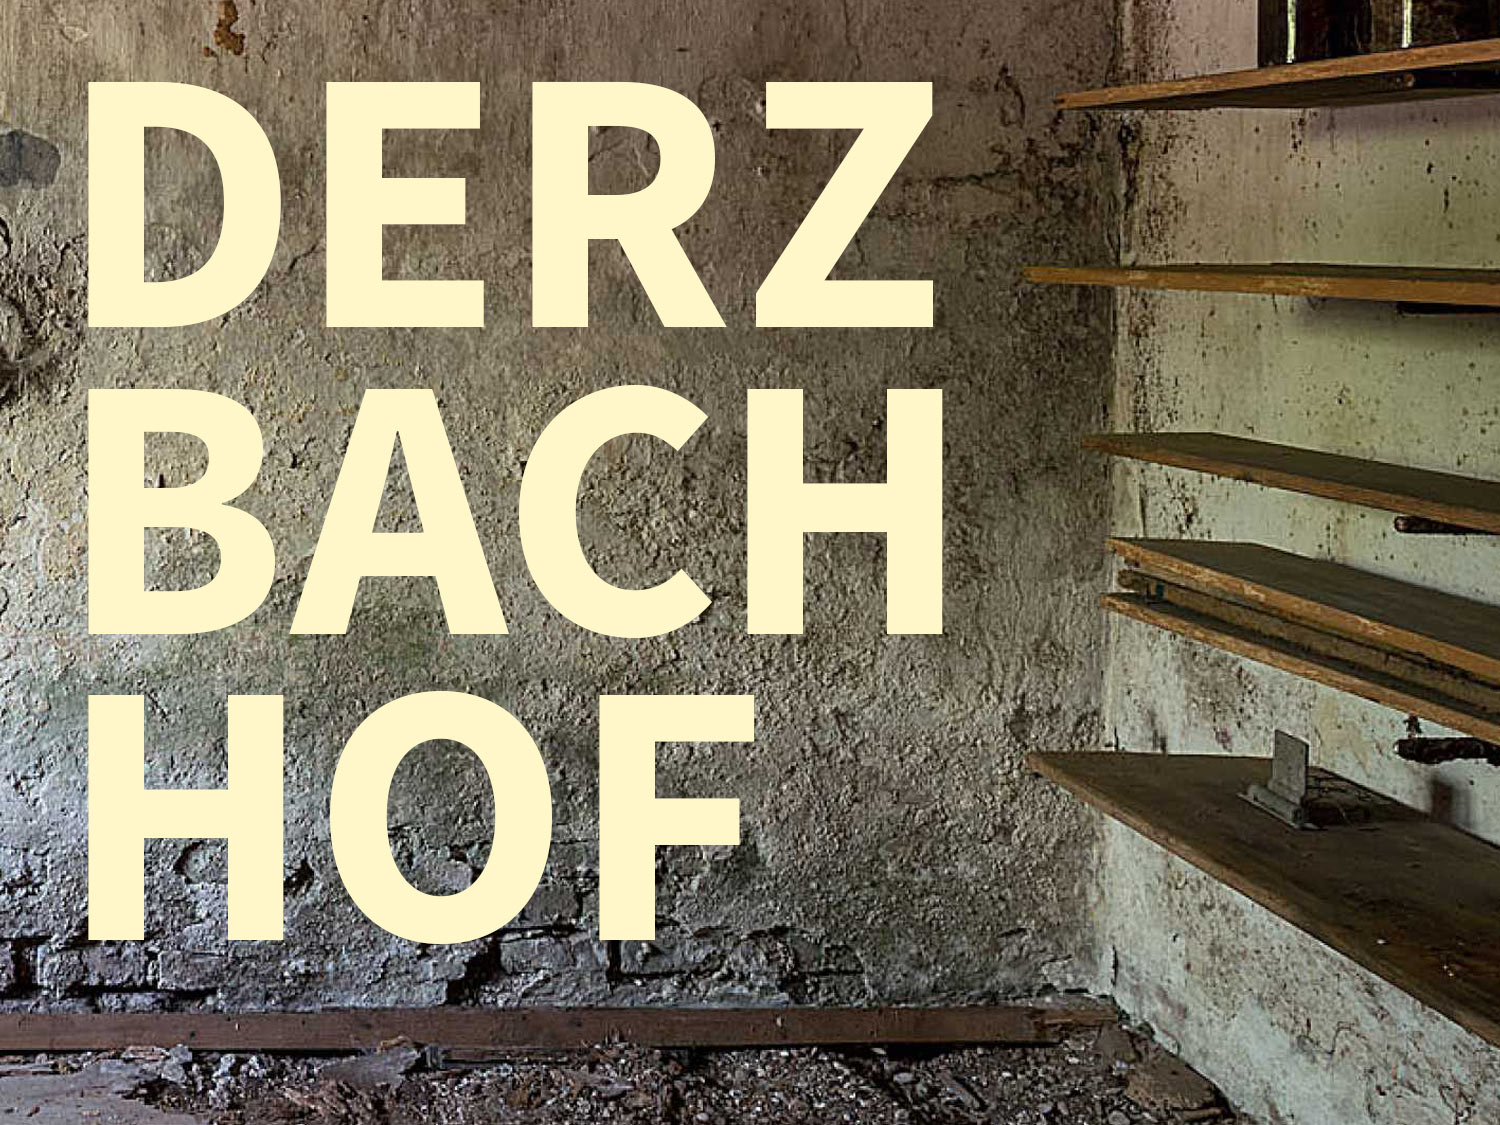 Bild zeigt Landhausmauerung und den Schriftzug Derzbachhof